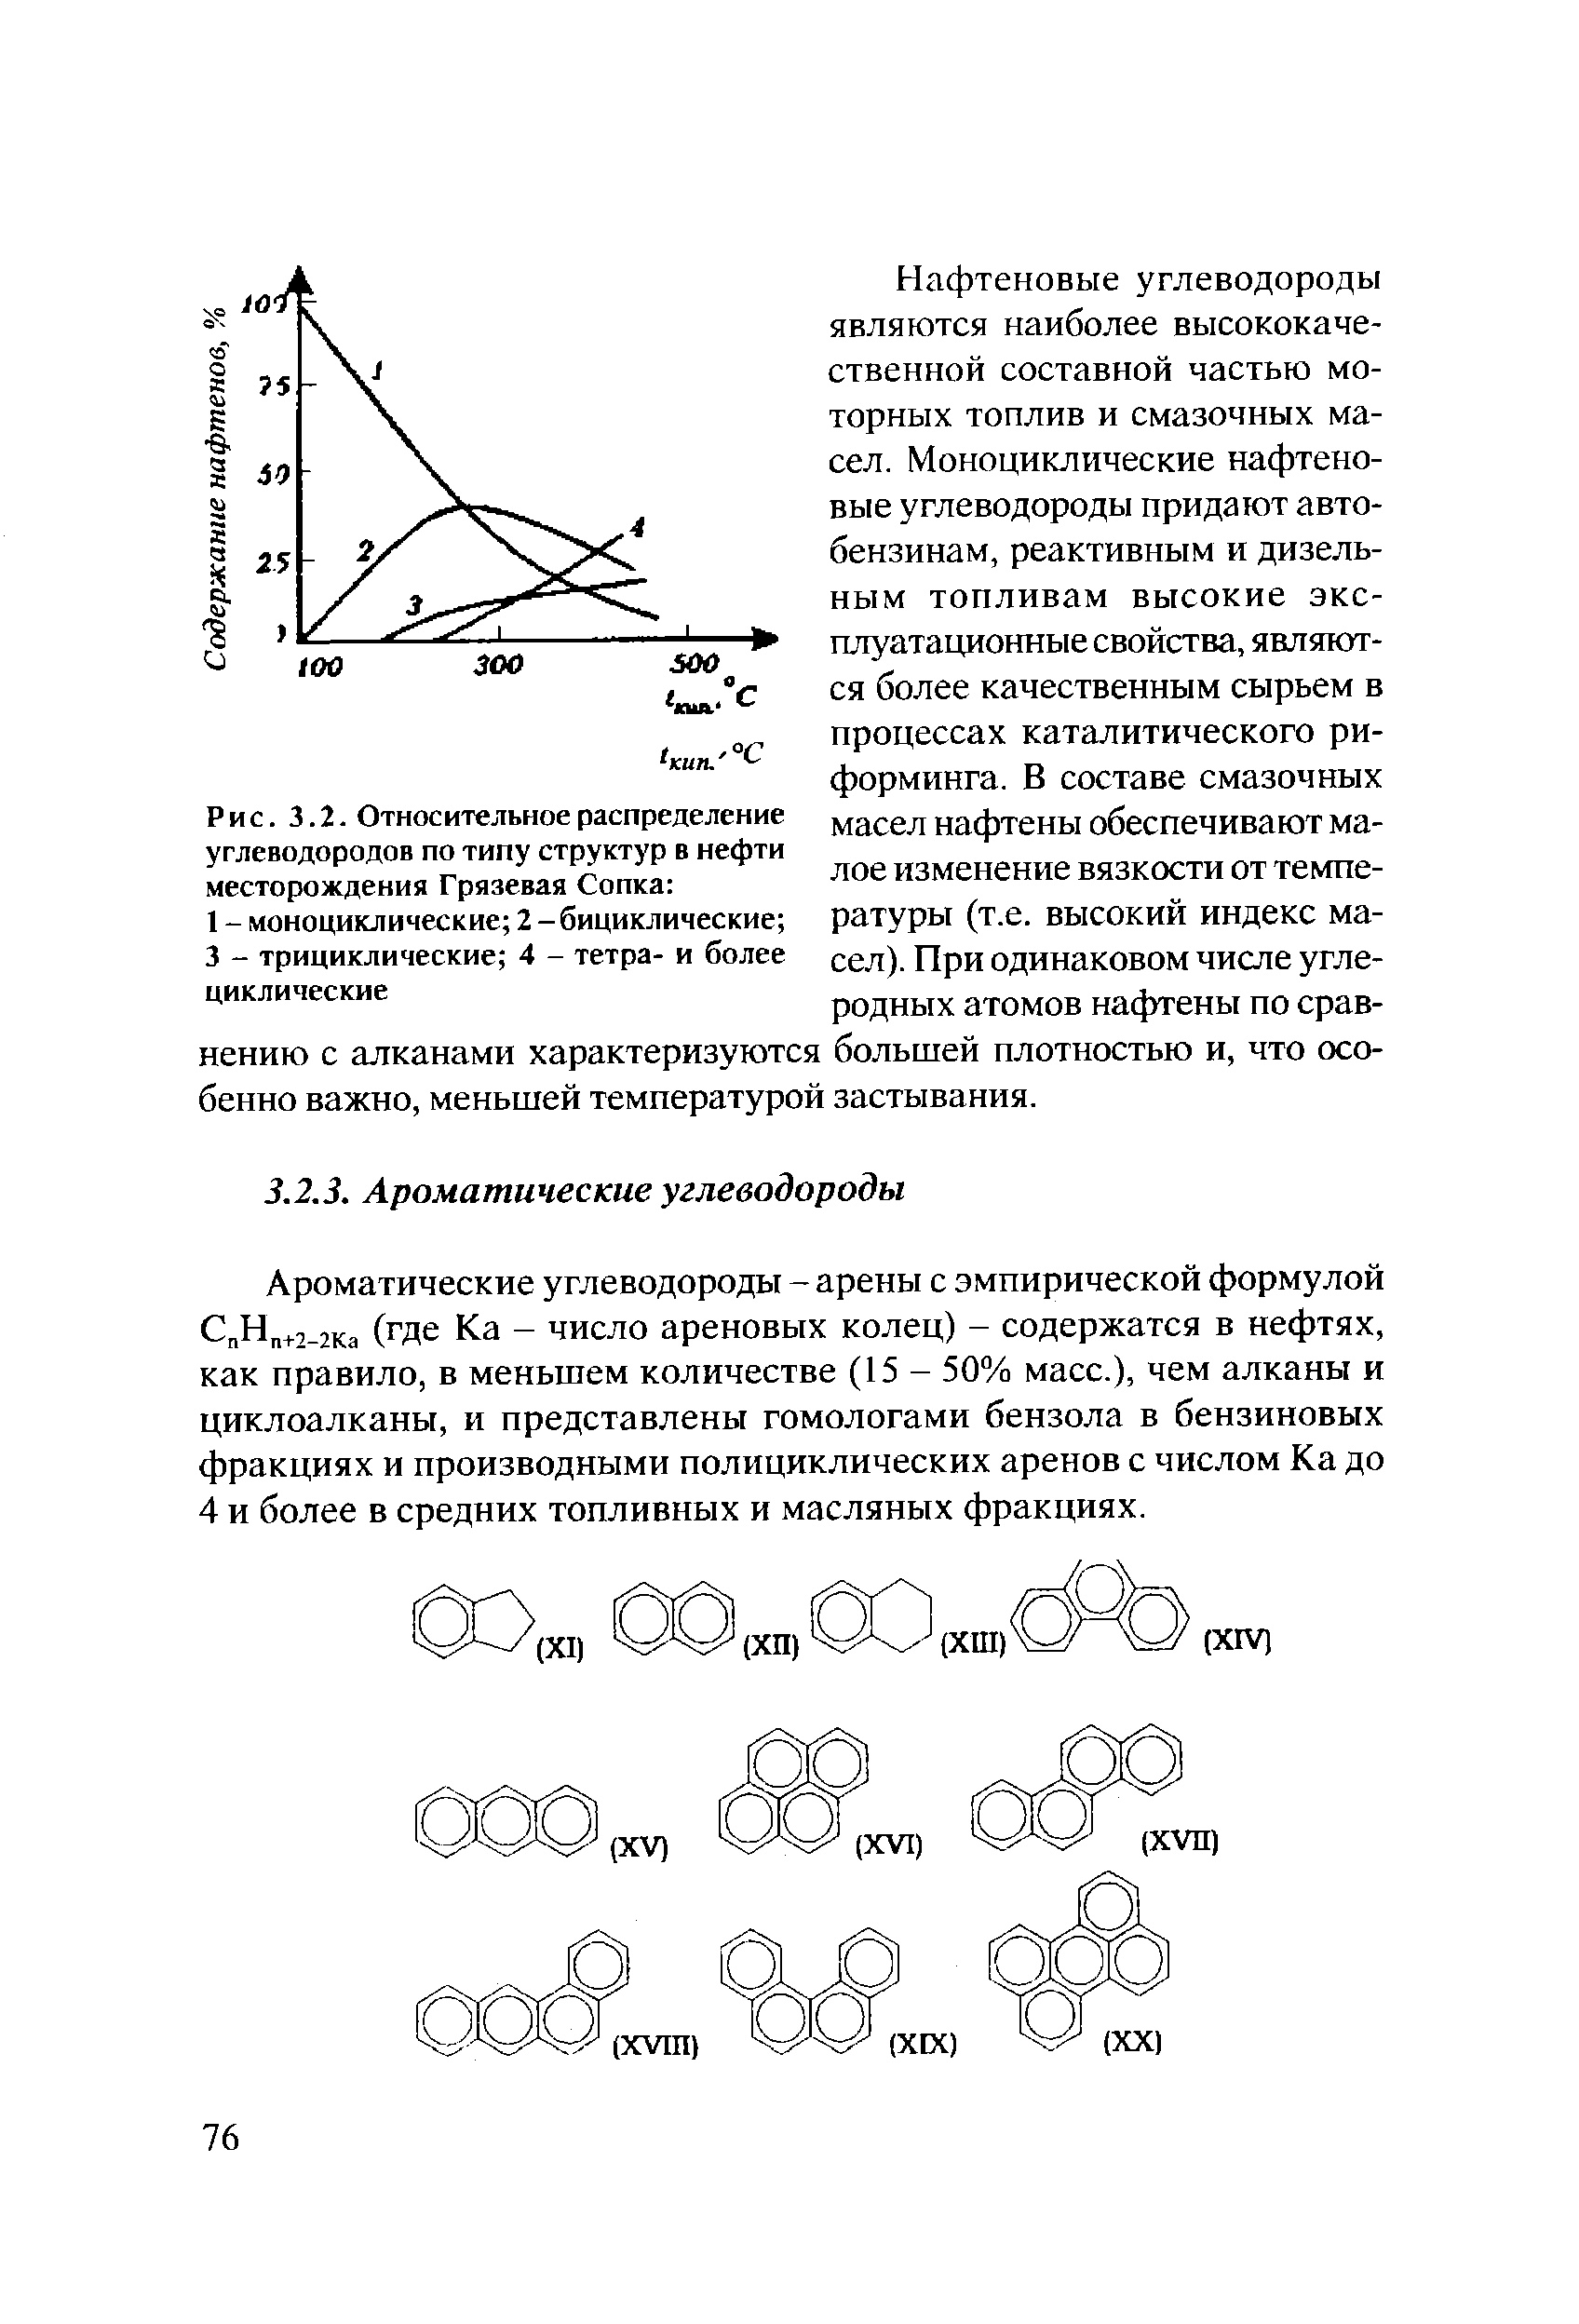 Ароматические углеводороды - арены с эмпирической формулой С Н +2 2Ка (где Ка - число ареновых колец) - содержатся в нефтях, как правило, в меньшем количестве (15 - 50% масс.), чем алканы и циклоалканы, и представлены гомологами бензола в бензиновых фракциях и производными полициклических аренов с числом Ка до 4 и более в средних топливных и масляных фракциях.